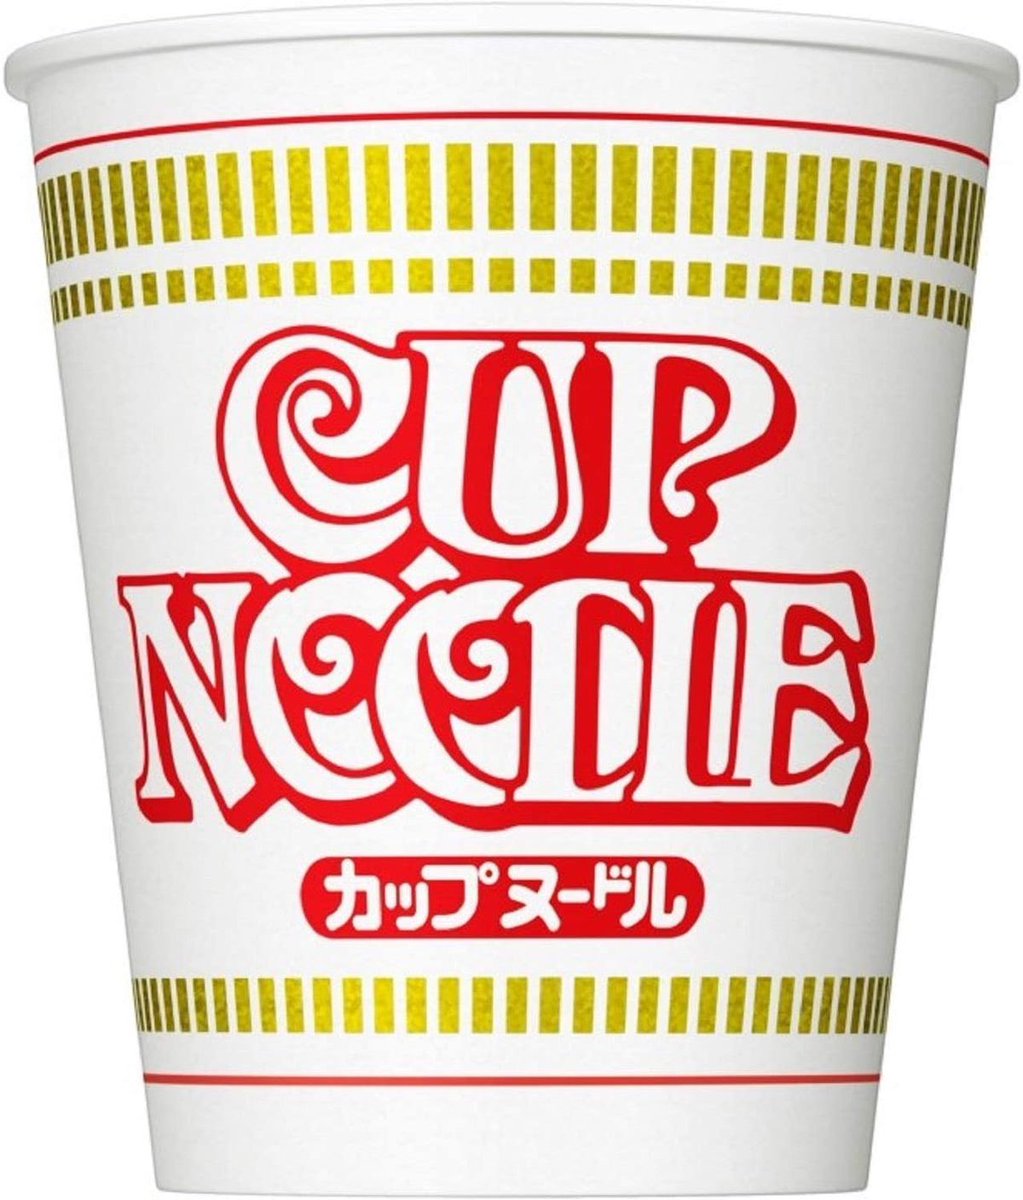 最近気づいたカップヌードルの秘密。英語の “Noodle”の発音を意識して、パッケージの「ド」の文字が小さくなってる。知ってた？